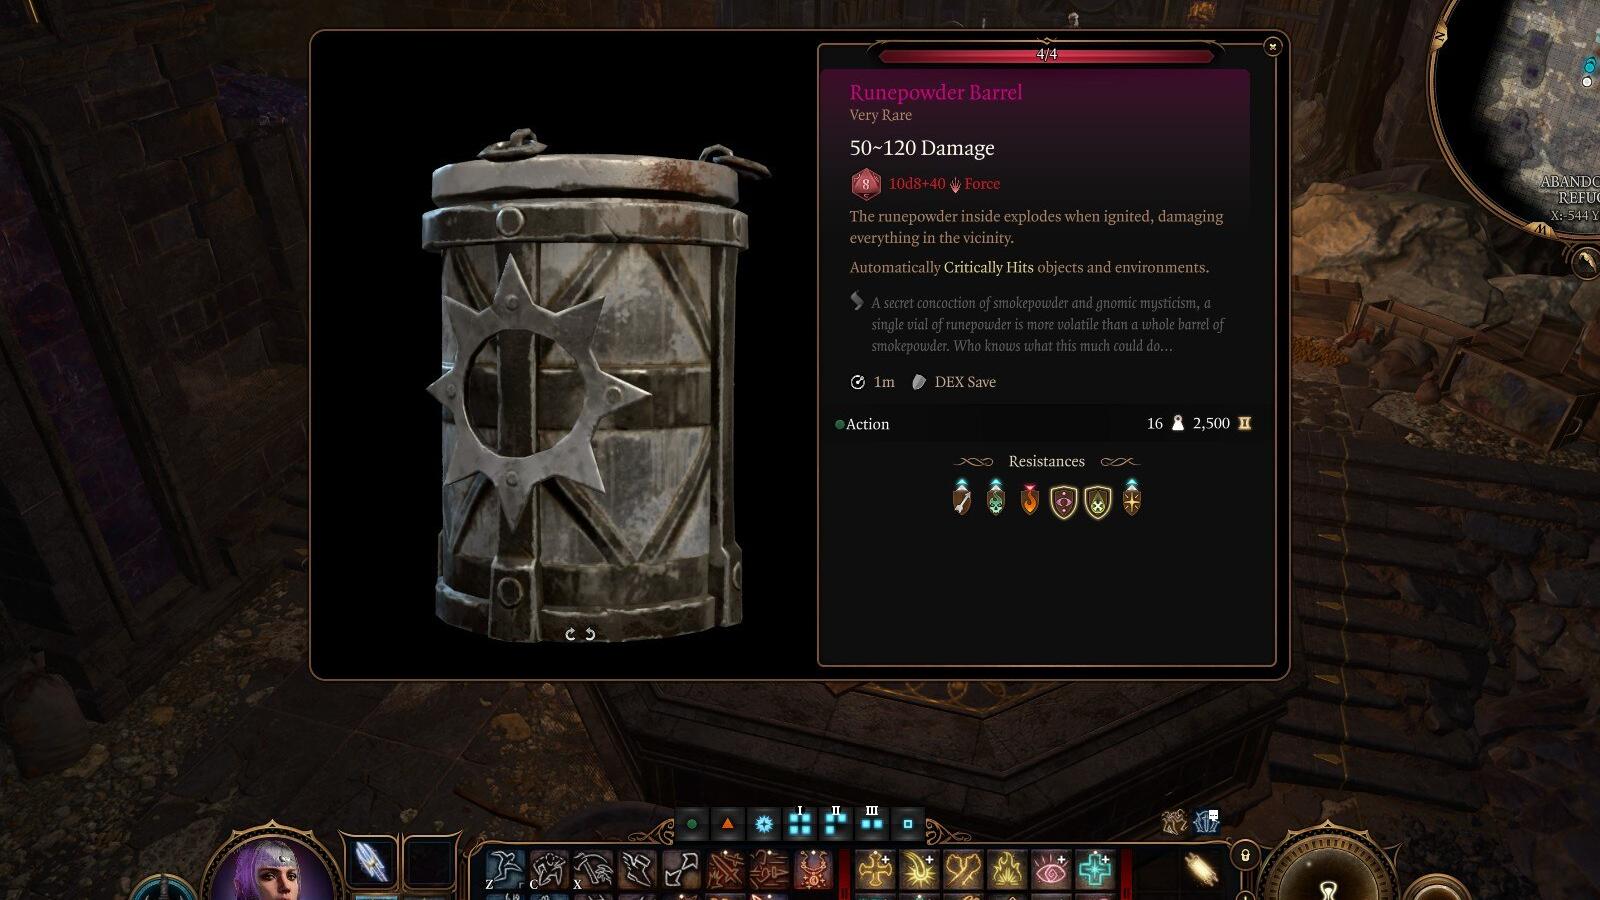 A close up of the Runepowder Barrel in Baldur's Gate 3